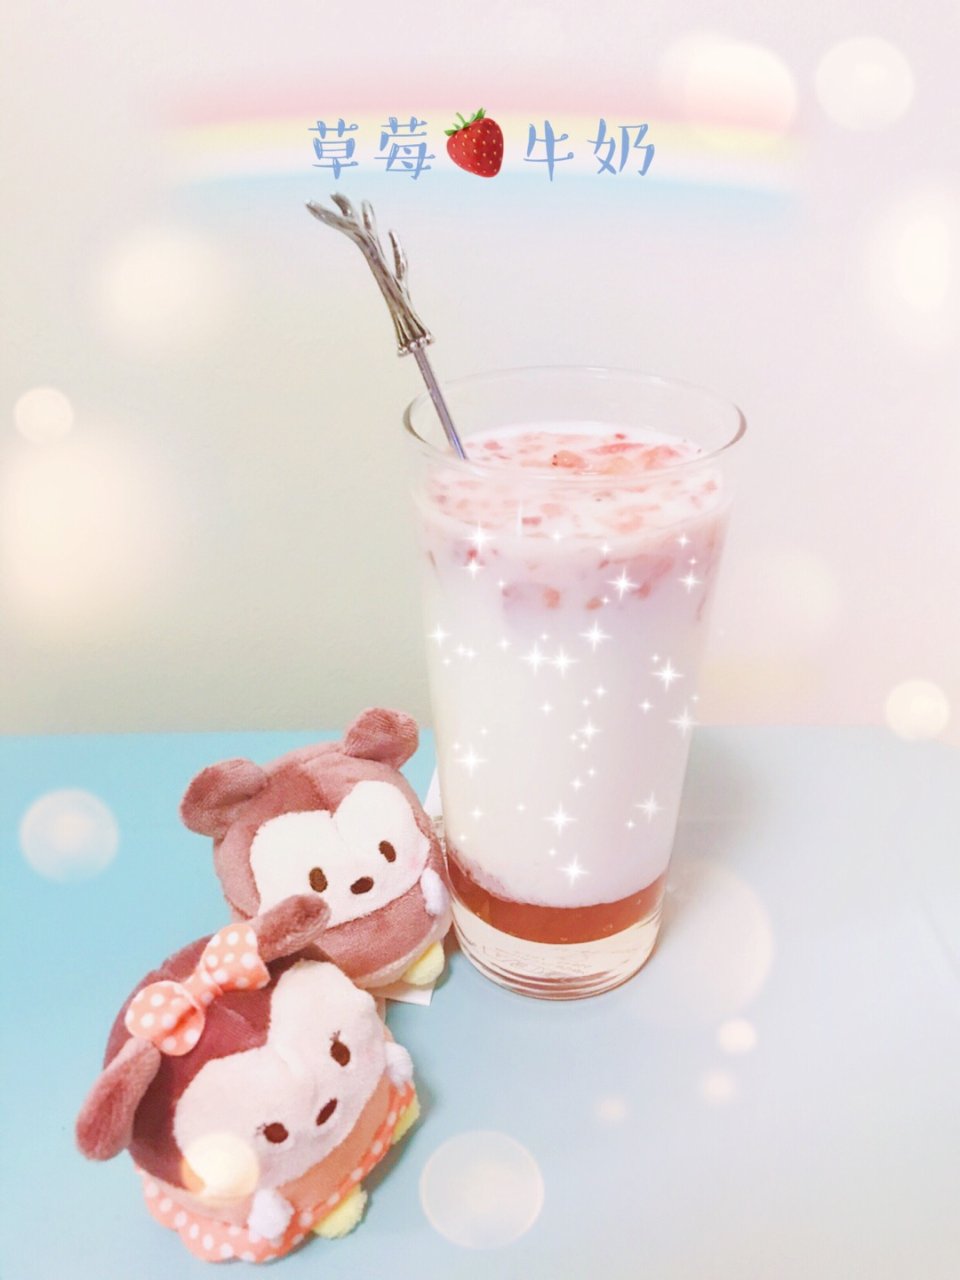 酸酸甜甜草莓牛奶🍓...